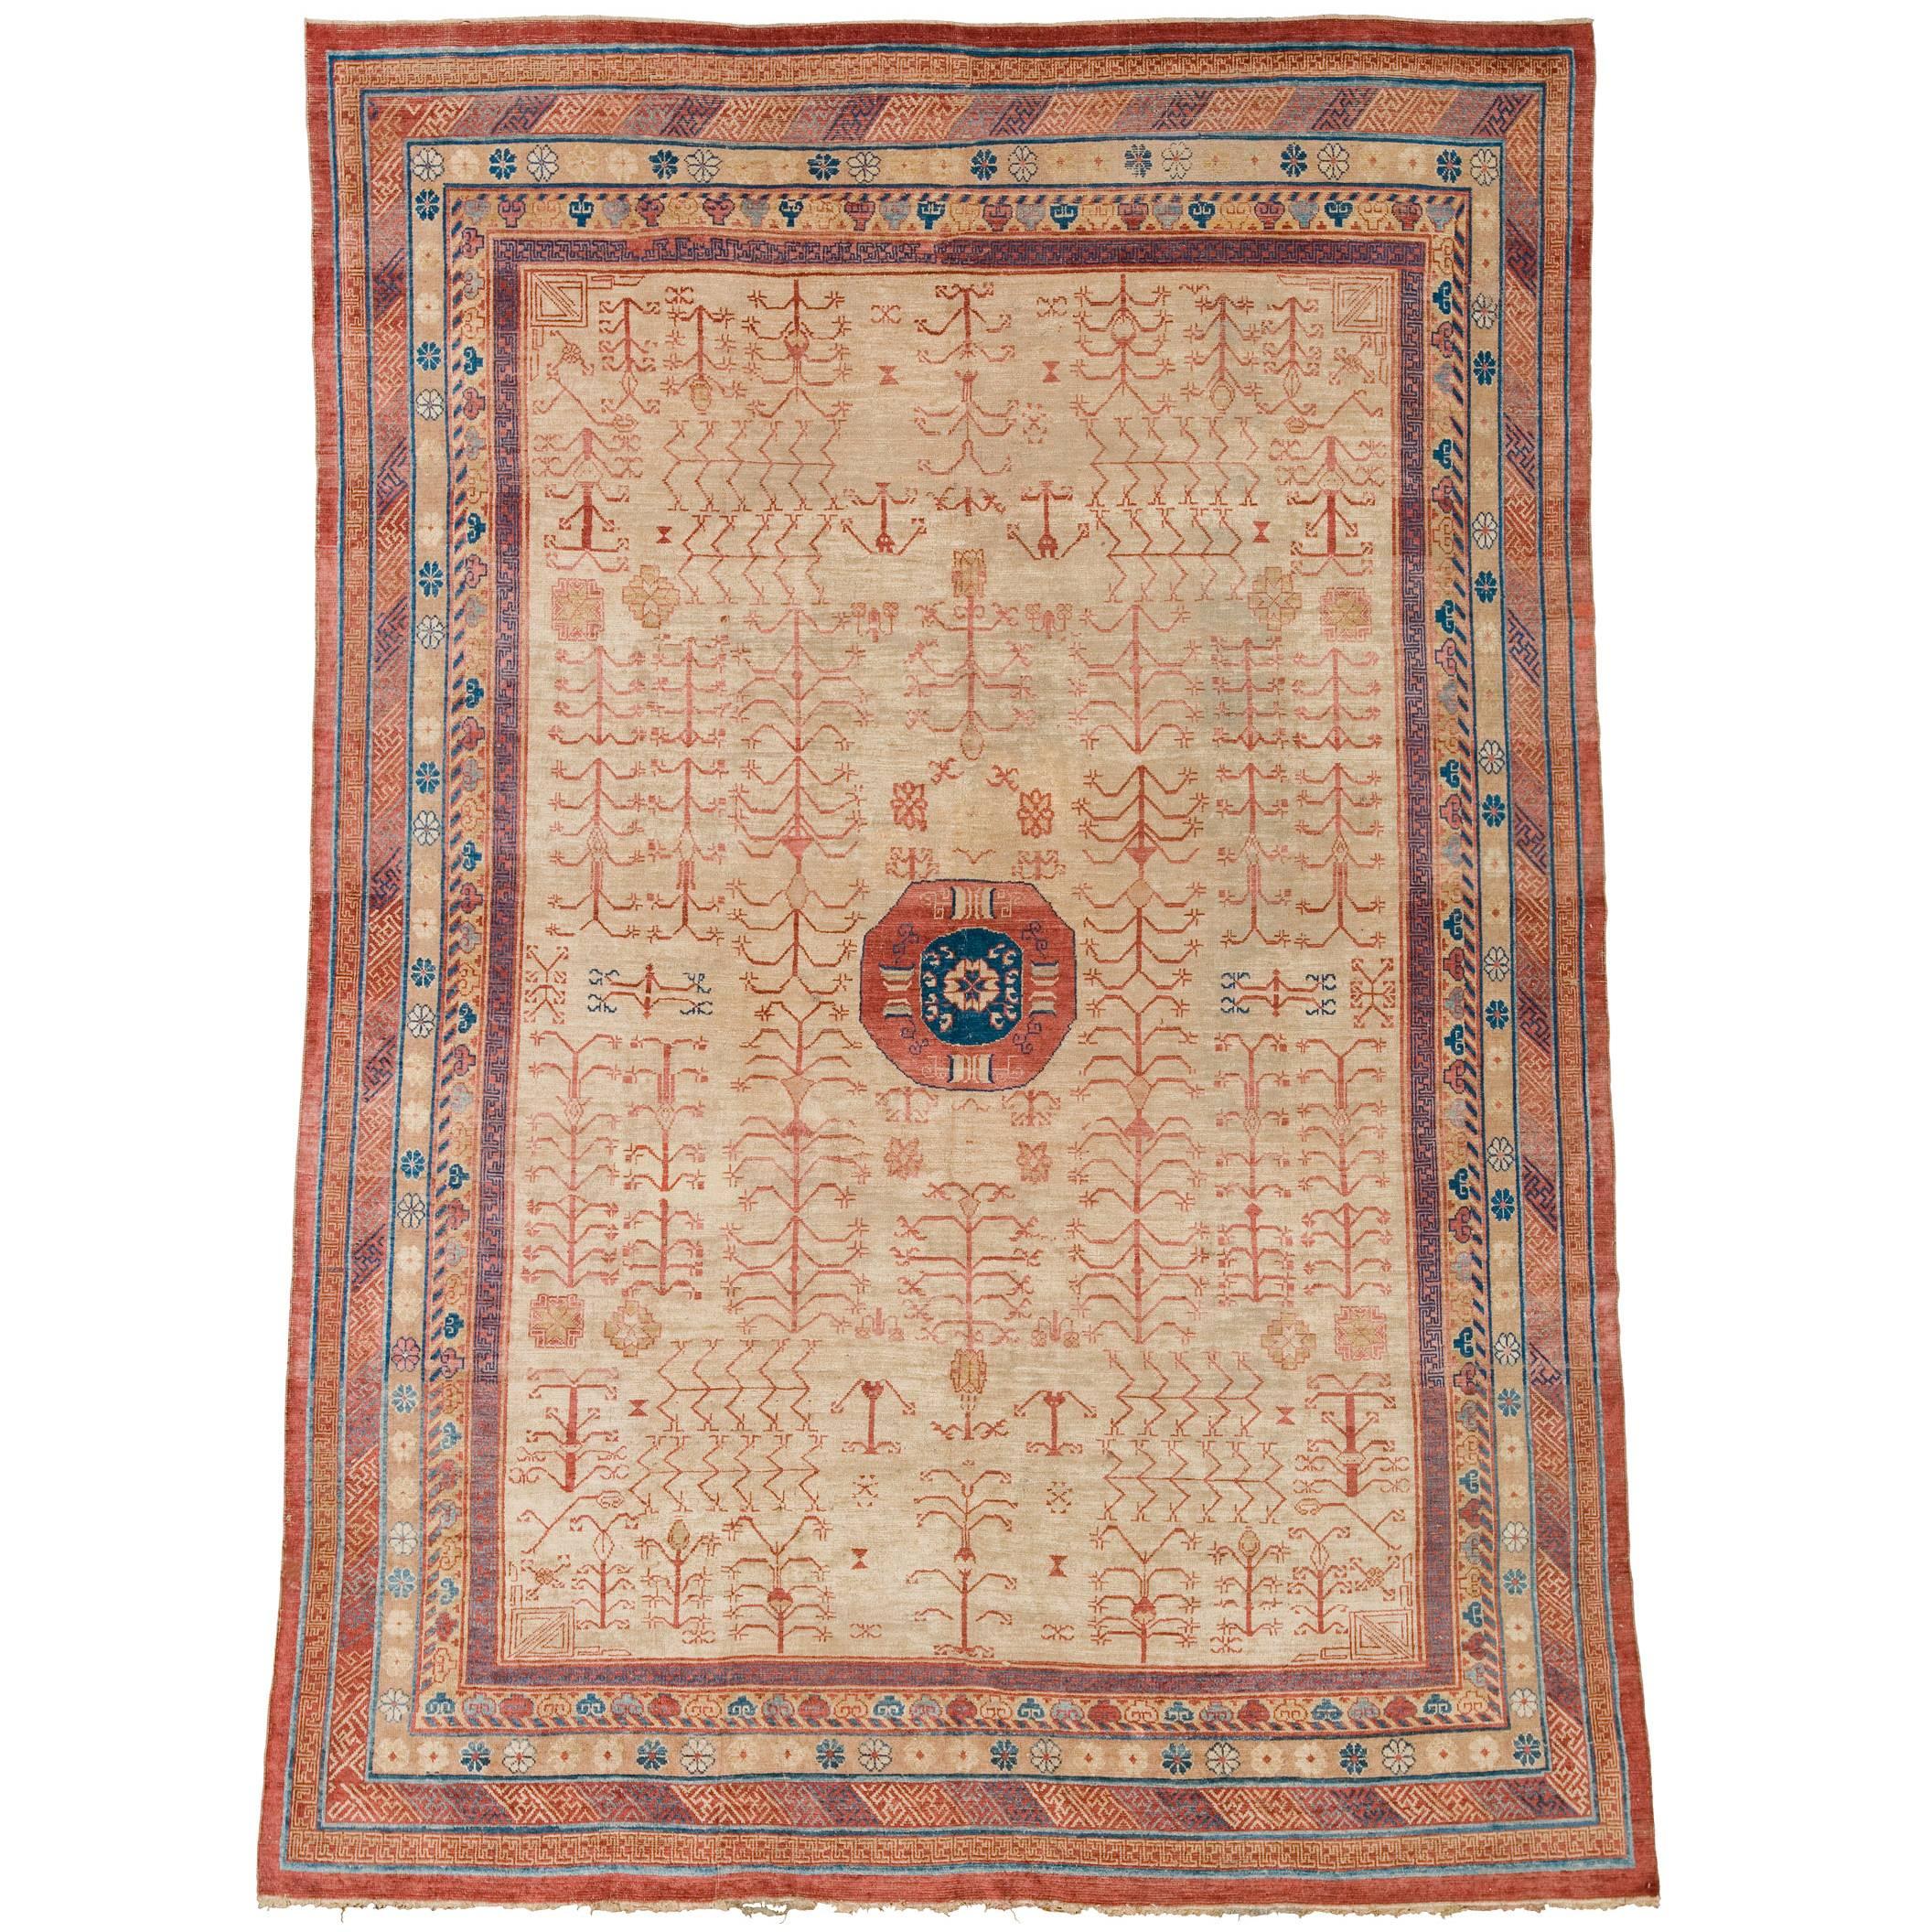 Chinesischer Khotan-Teppich aus dem späten 19. Jahrhundert